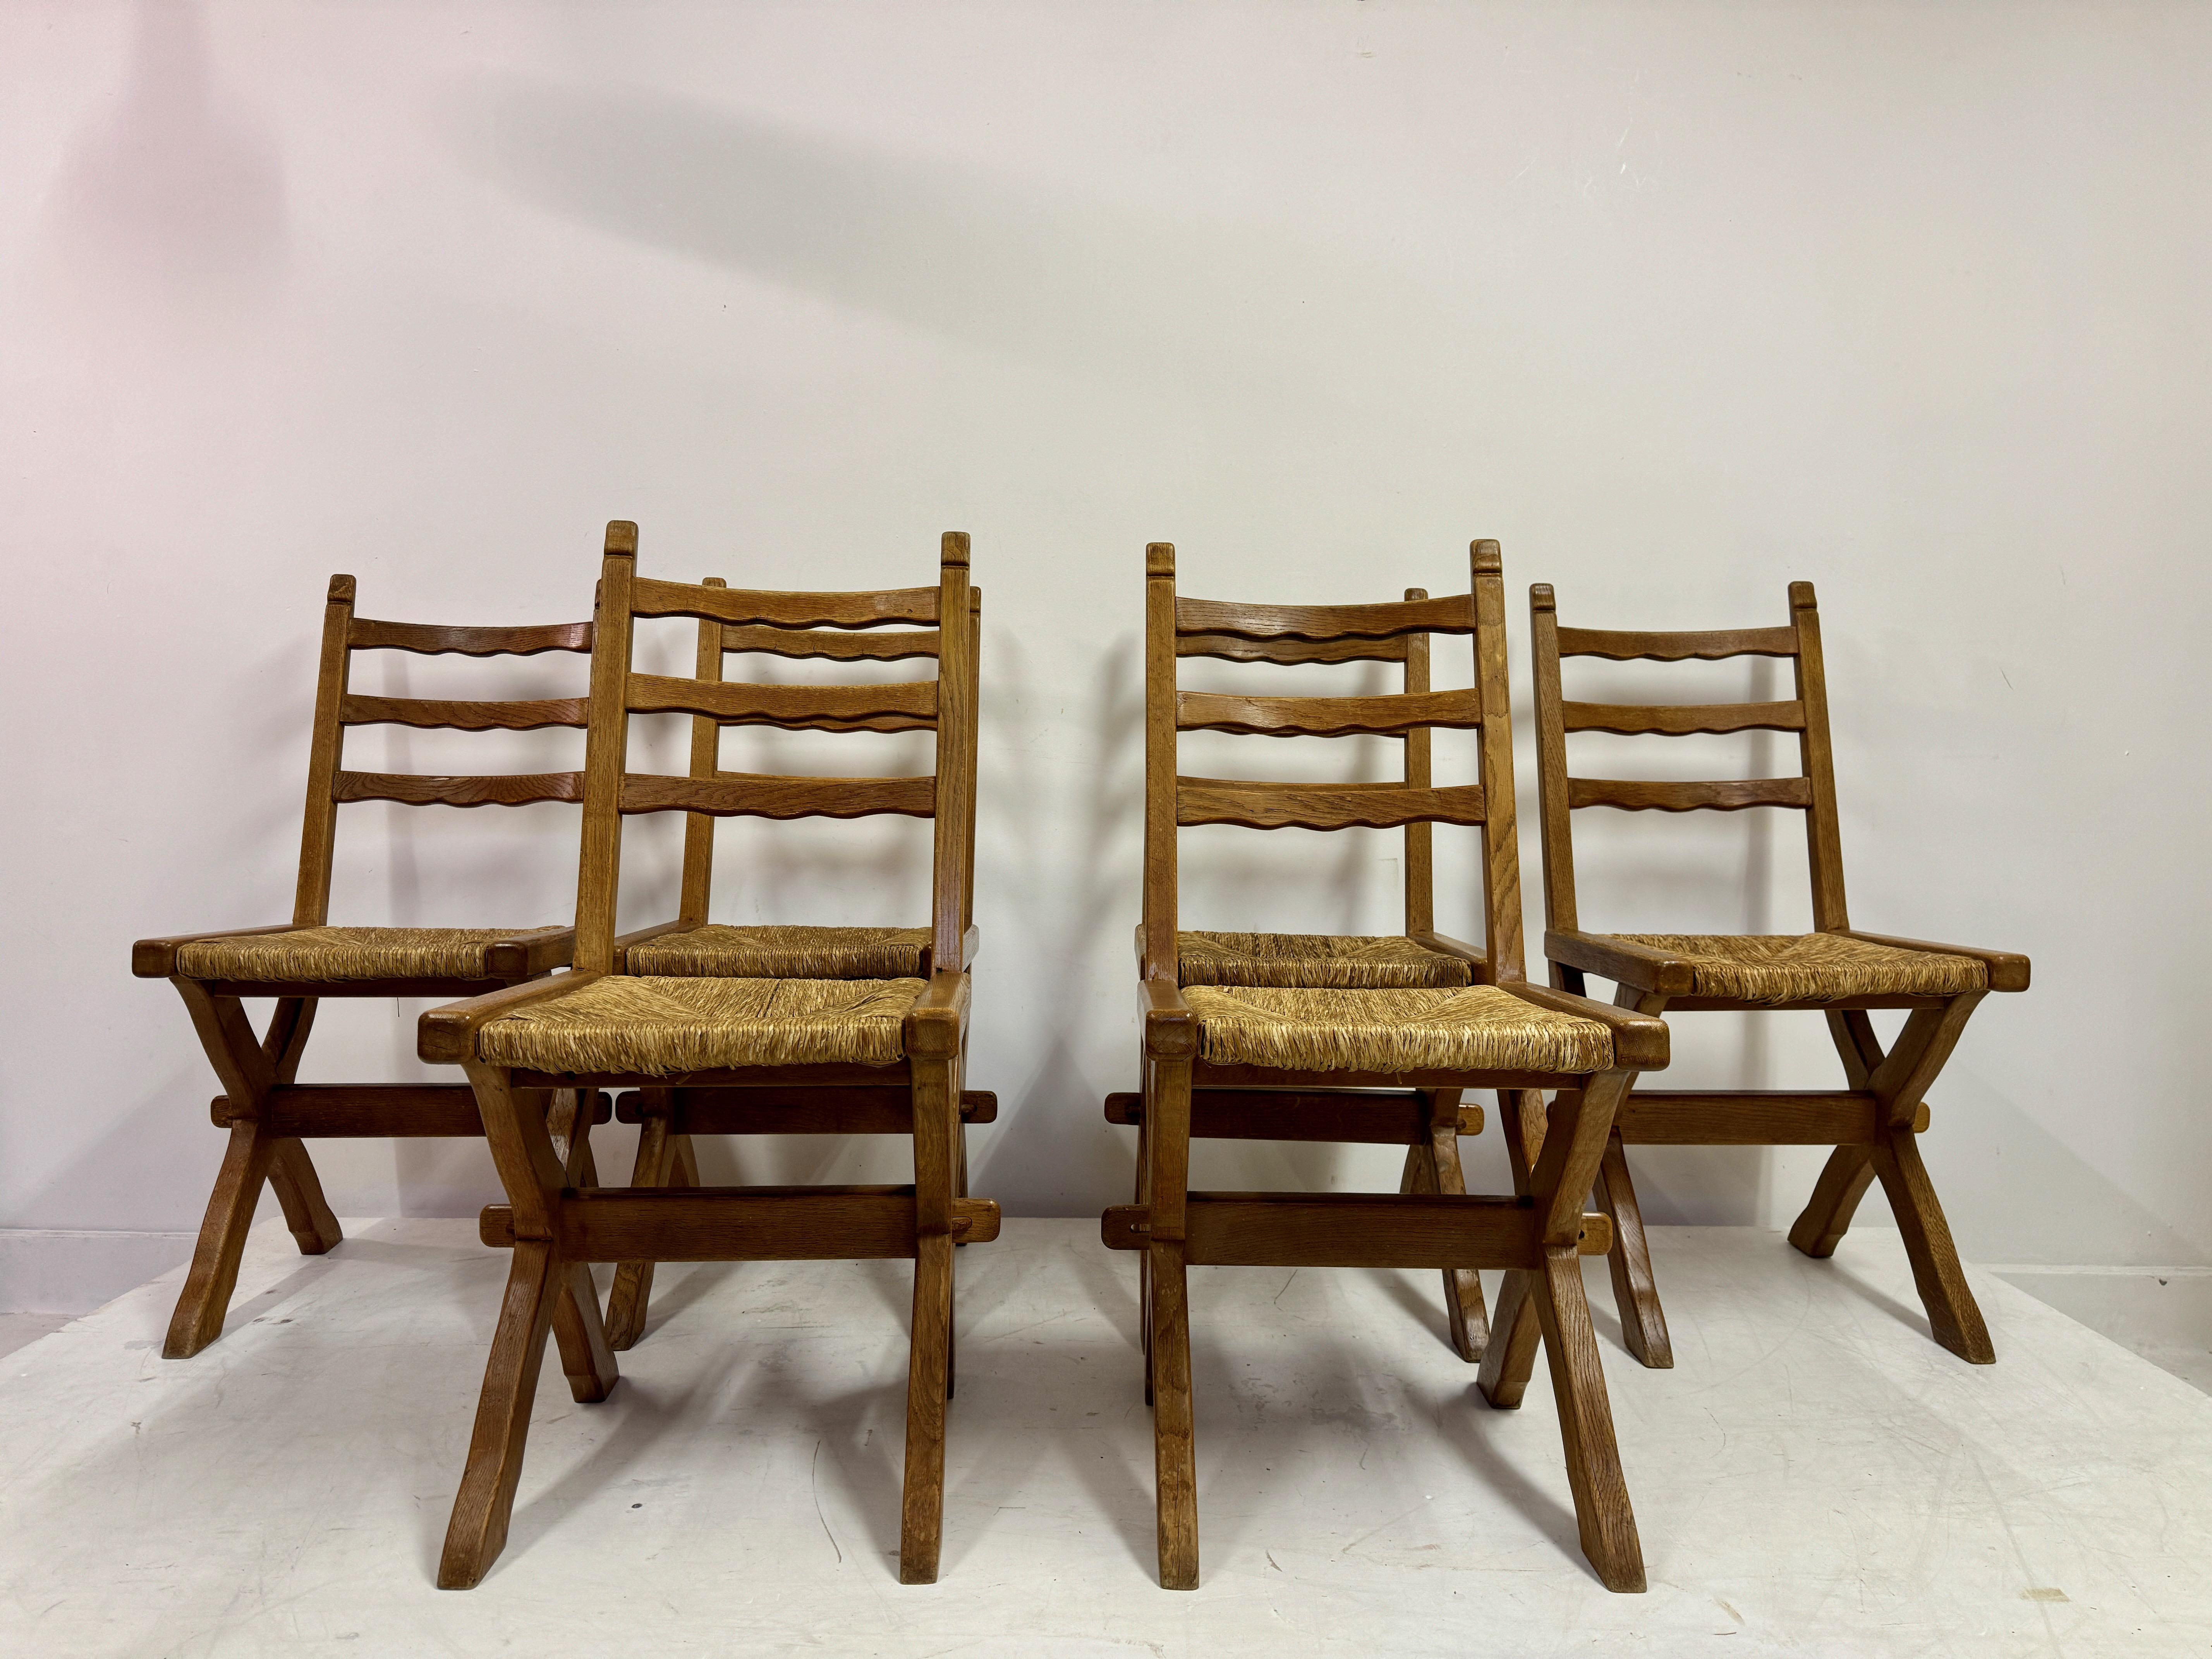 Satz von sechs Esszimmerstühlen

Rahmen aus Eichenholz

Eilige Sitze

Ein Stuhl mit Beschädigung der Sitzfläche (auf den Fotos zu sehen)

Sitzhöhe 48cm

1960er Jahre Belgien